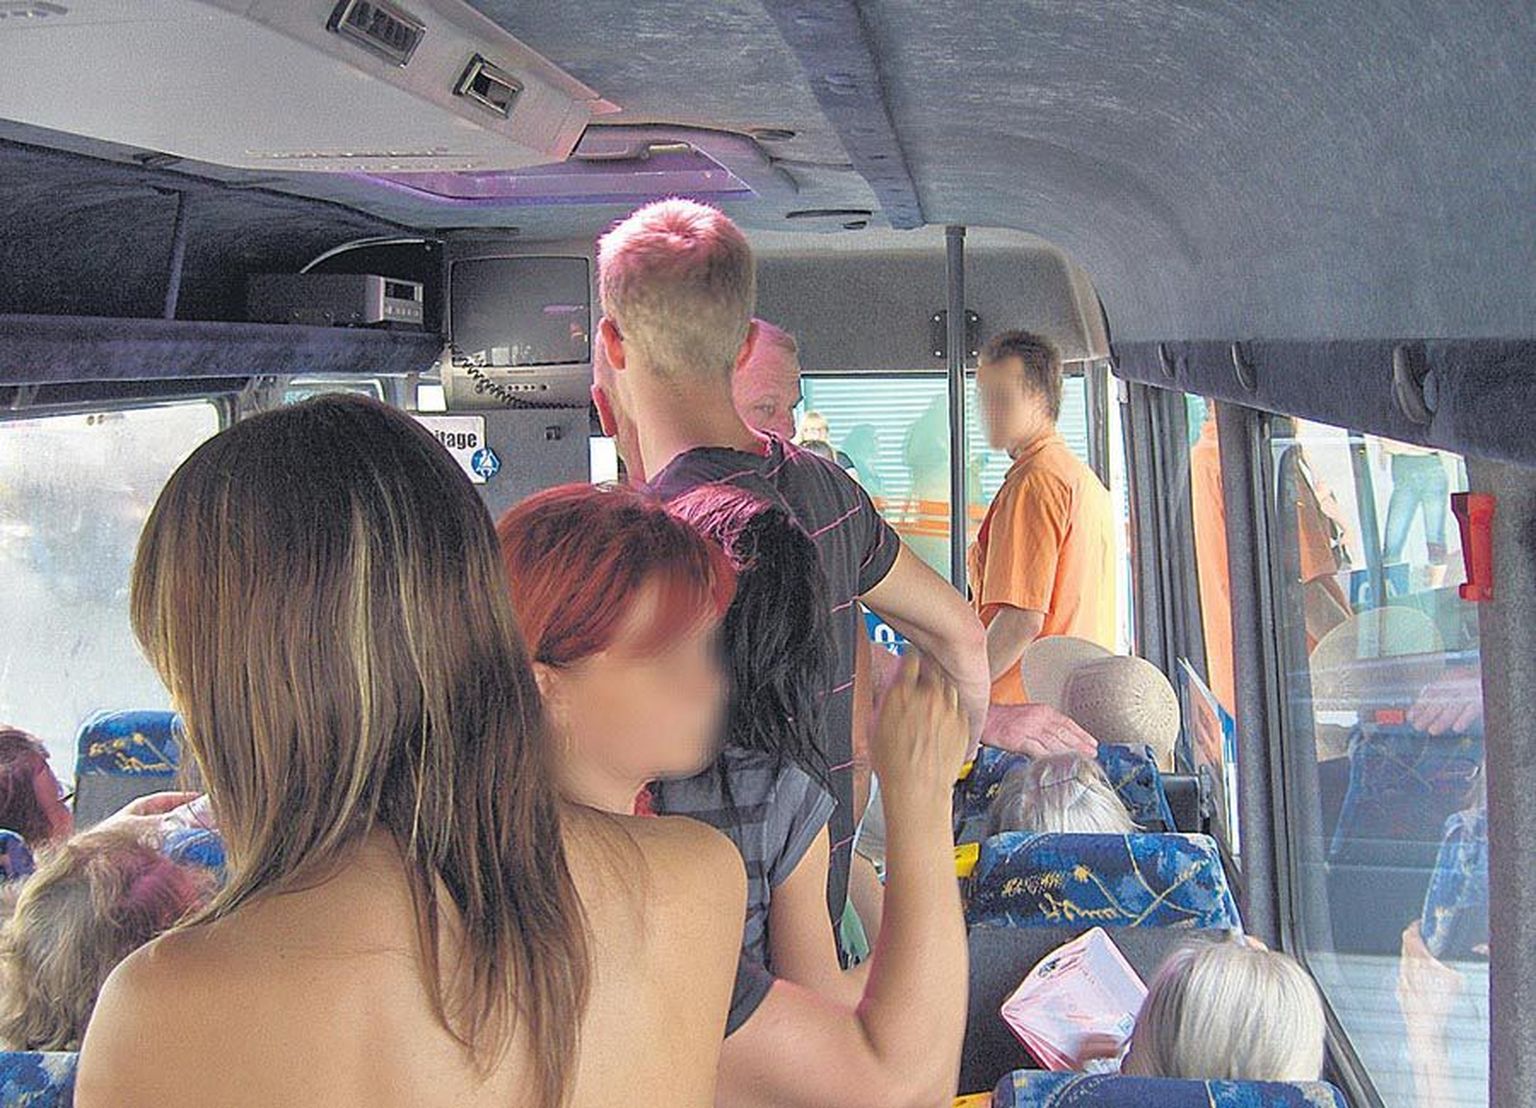 Sellise foto tegi üks sõitja reedel Viljandis Mõisakülla väljunud bussist. Tema sõnul oli seal ruumi napilt nii pikematel istujatel kui seisjatel. Bussis valitses temperatuur, mis pigem sobiks sauna.